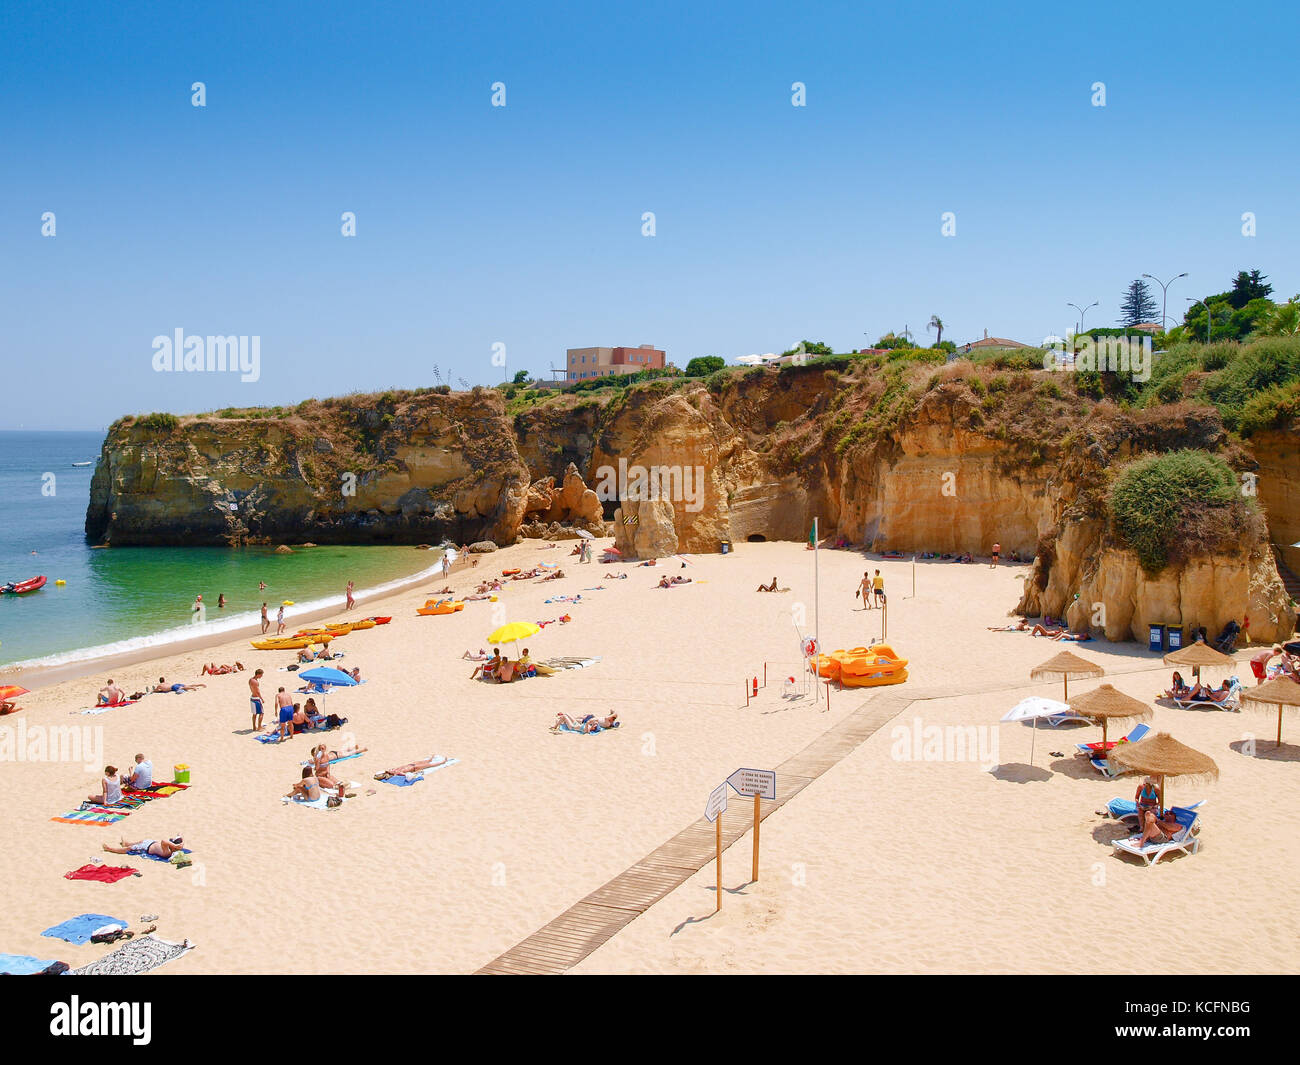 La plage de batata à Lagos, Algarve, PORTUGAL Banque D'Images